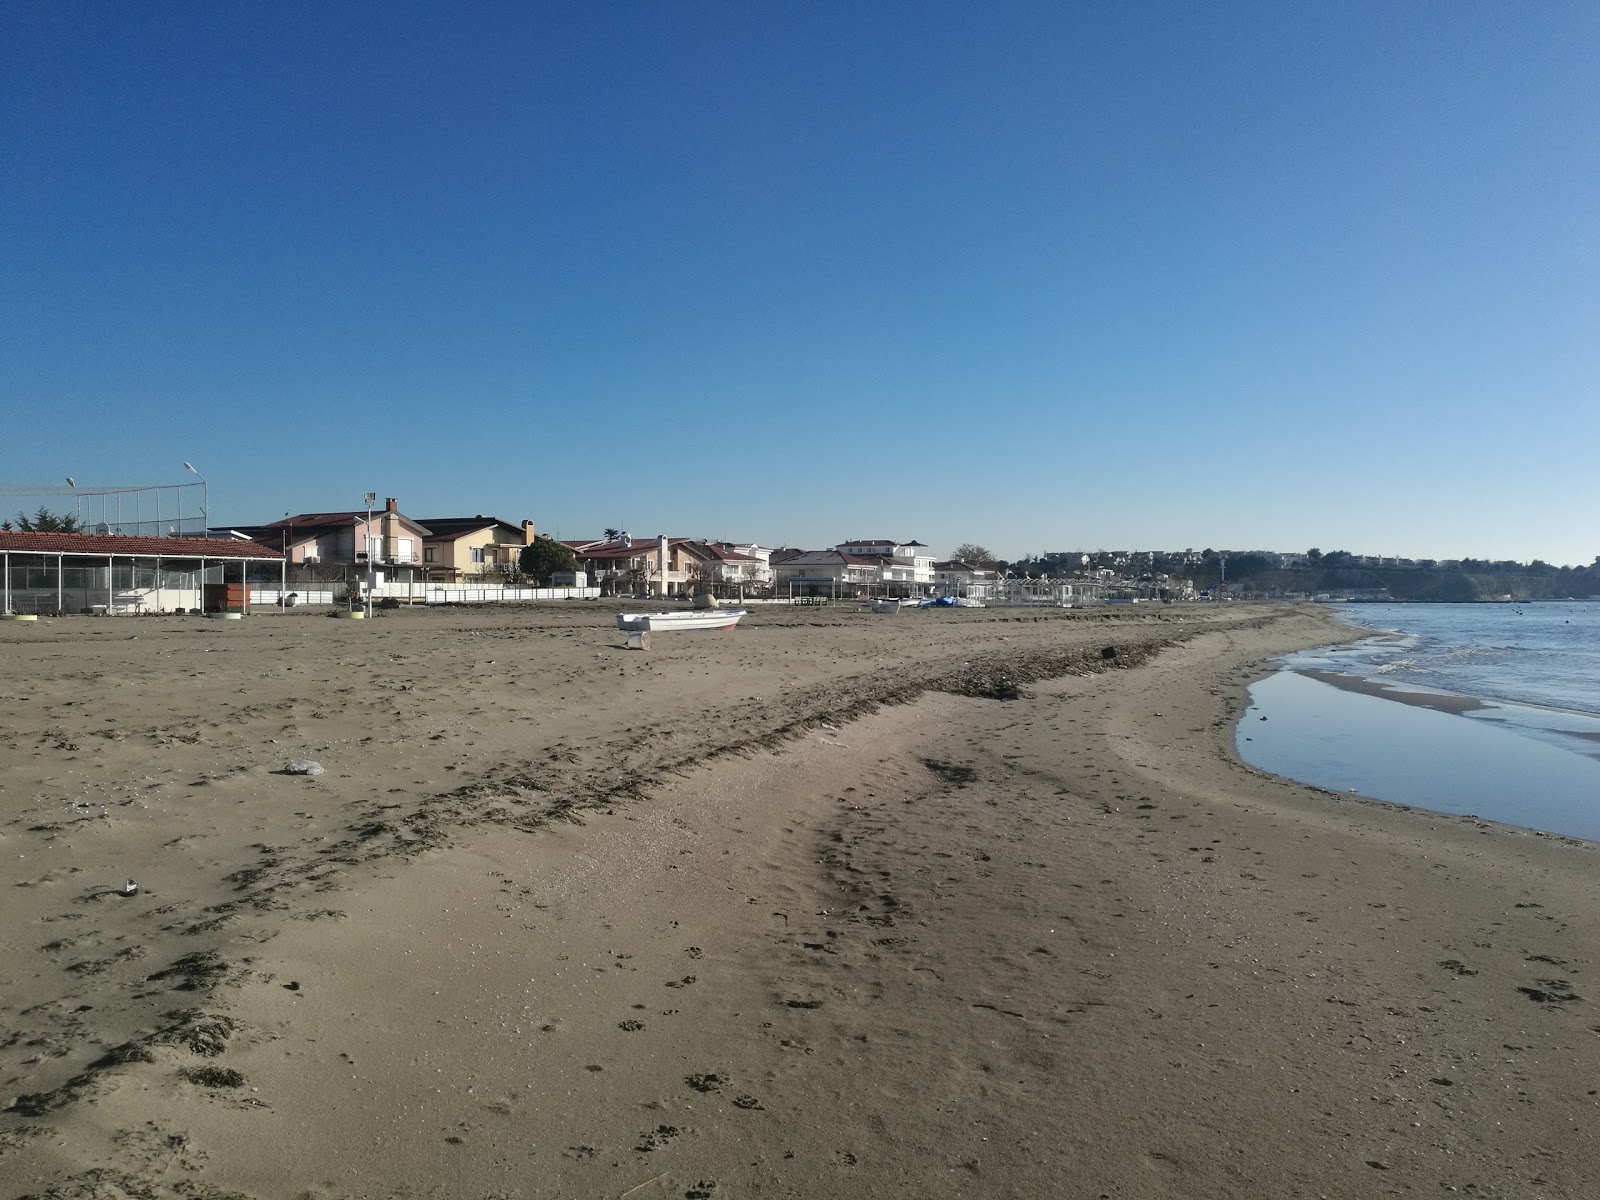 Zdjęcie Camcioglu beach II - popularne miejsce wśród znawców relaksu